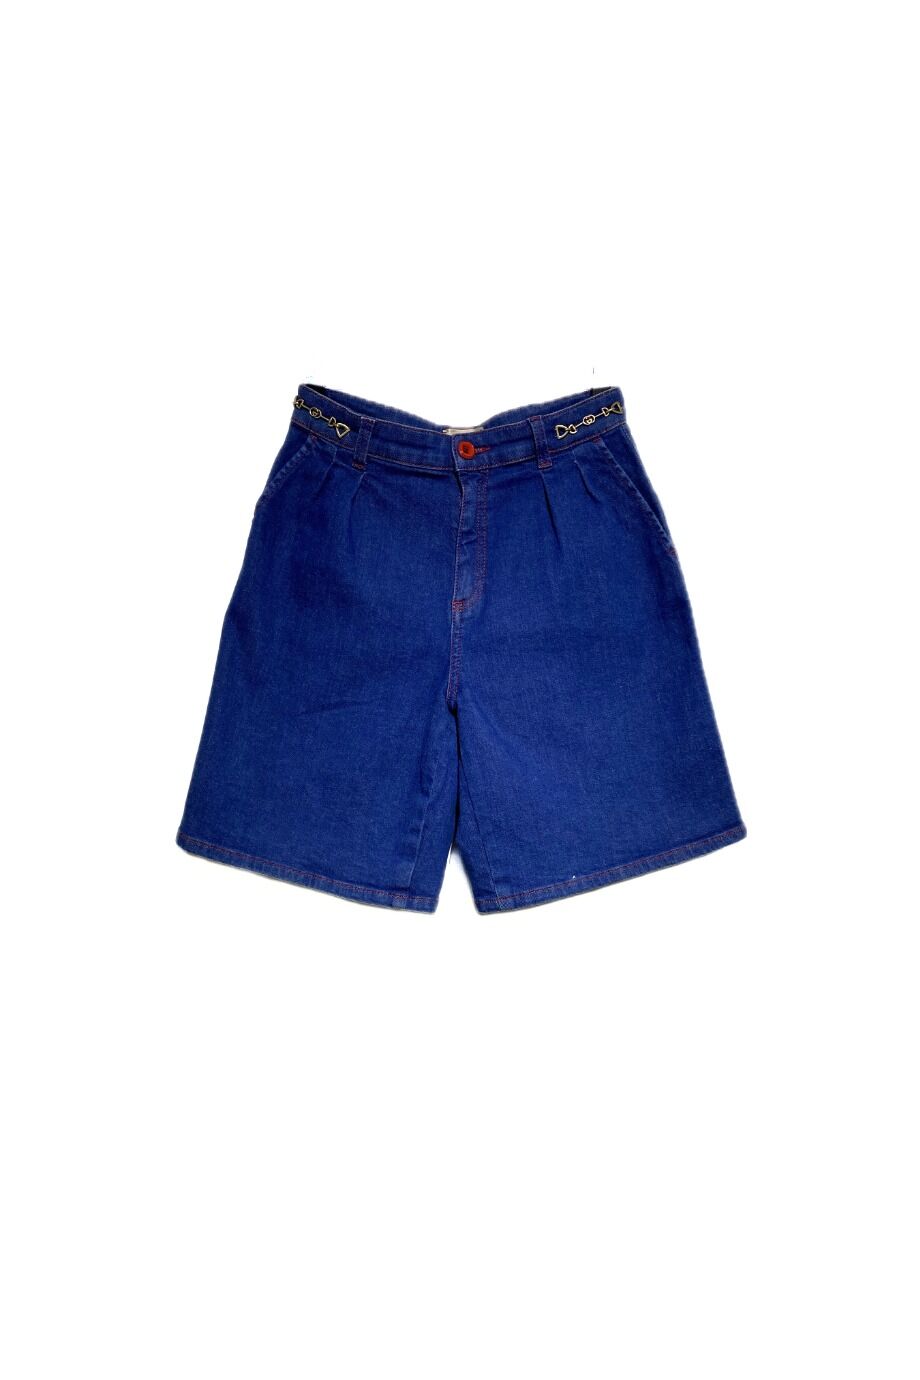 image 1 Детские джинсовые шорты синего цвета с красной строчкой